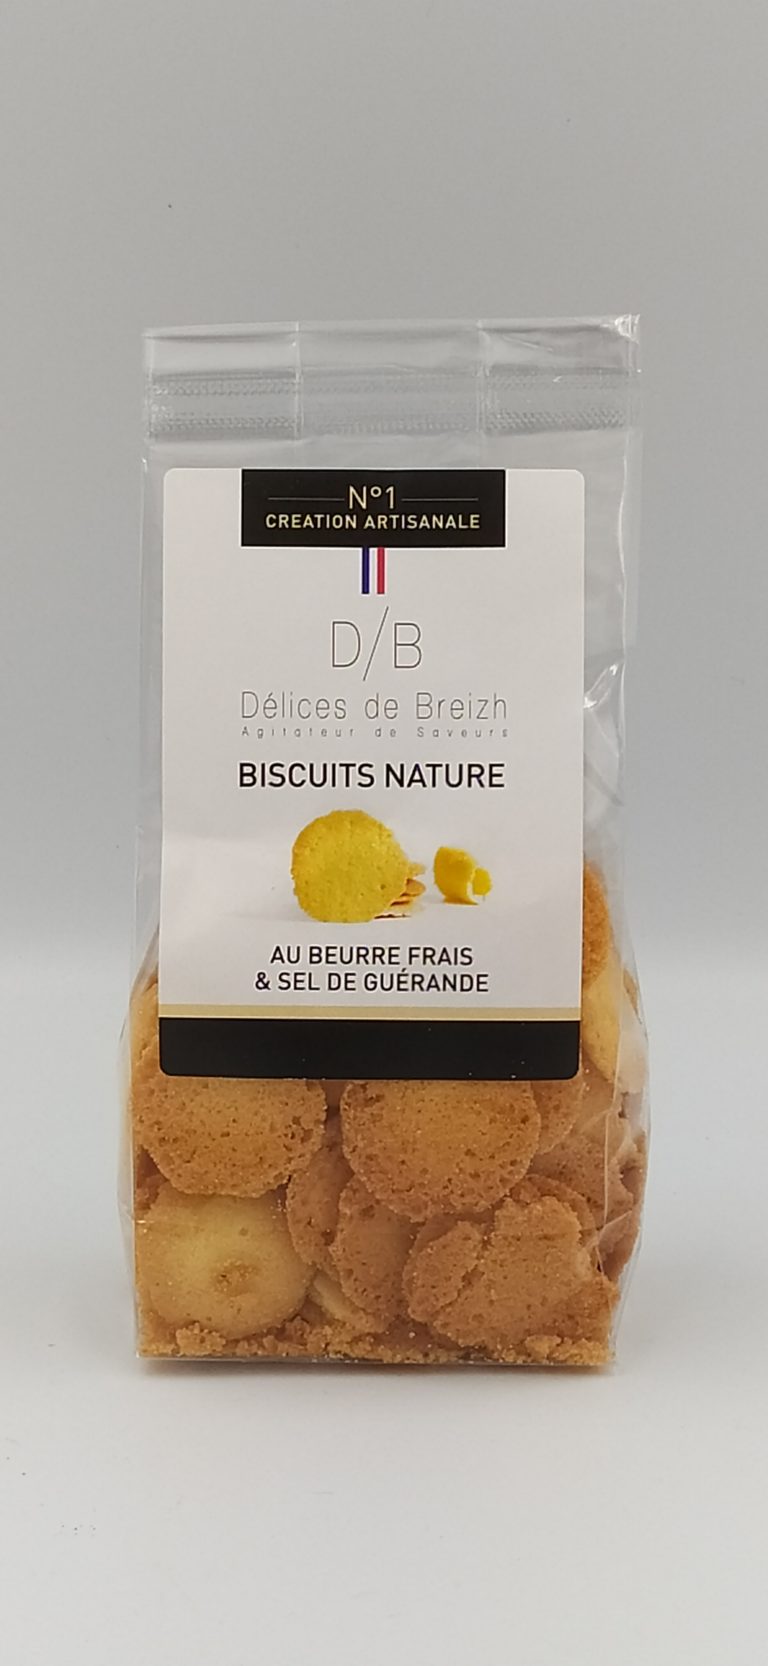 Biscuits Nature “delices De Breizh” La Cave Et Ses Delices 